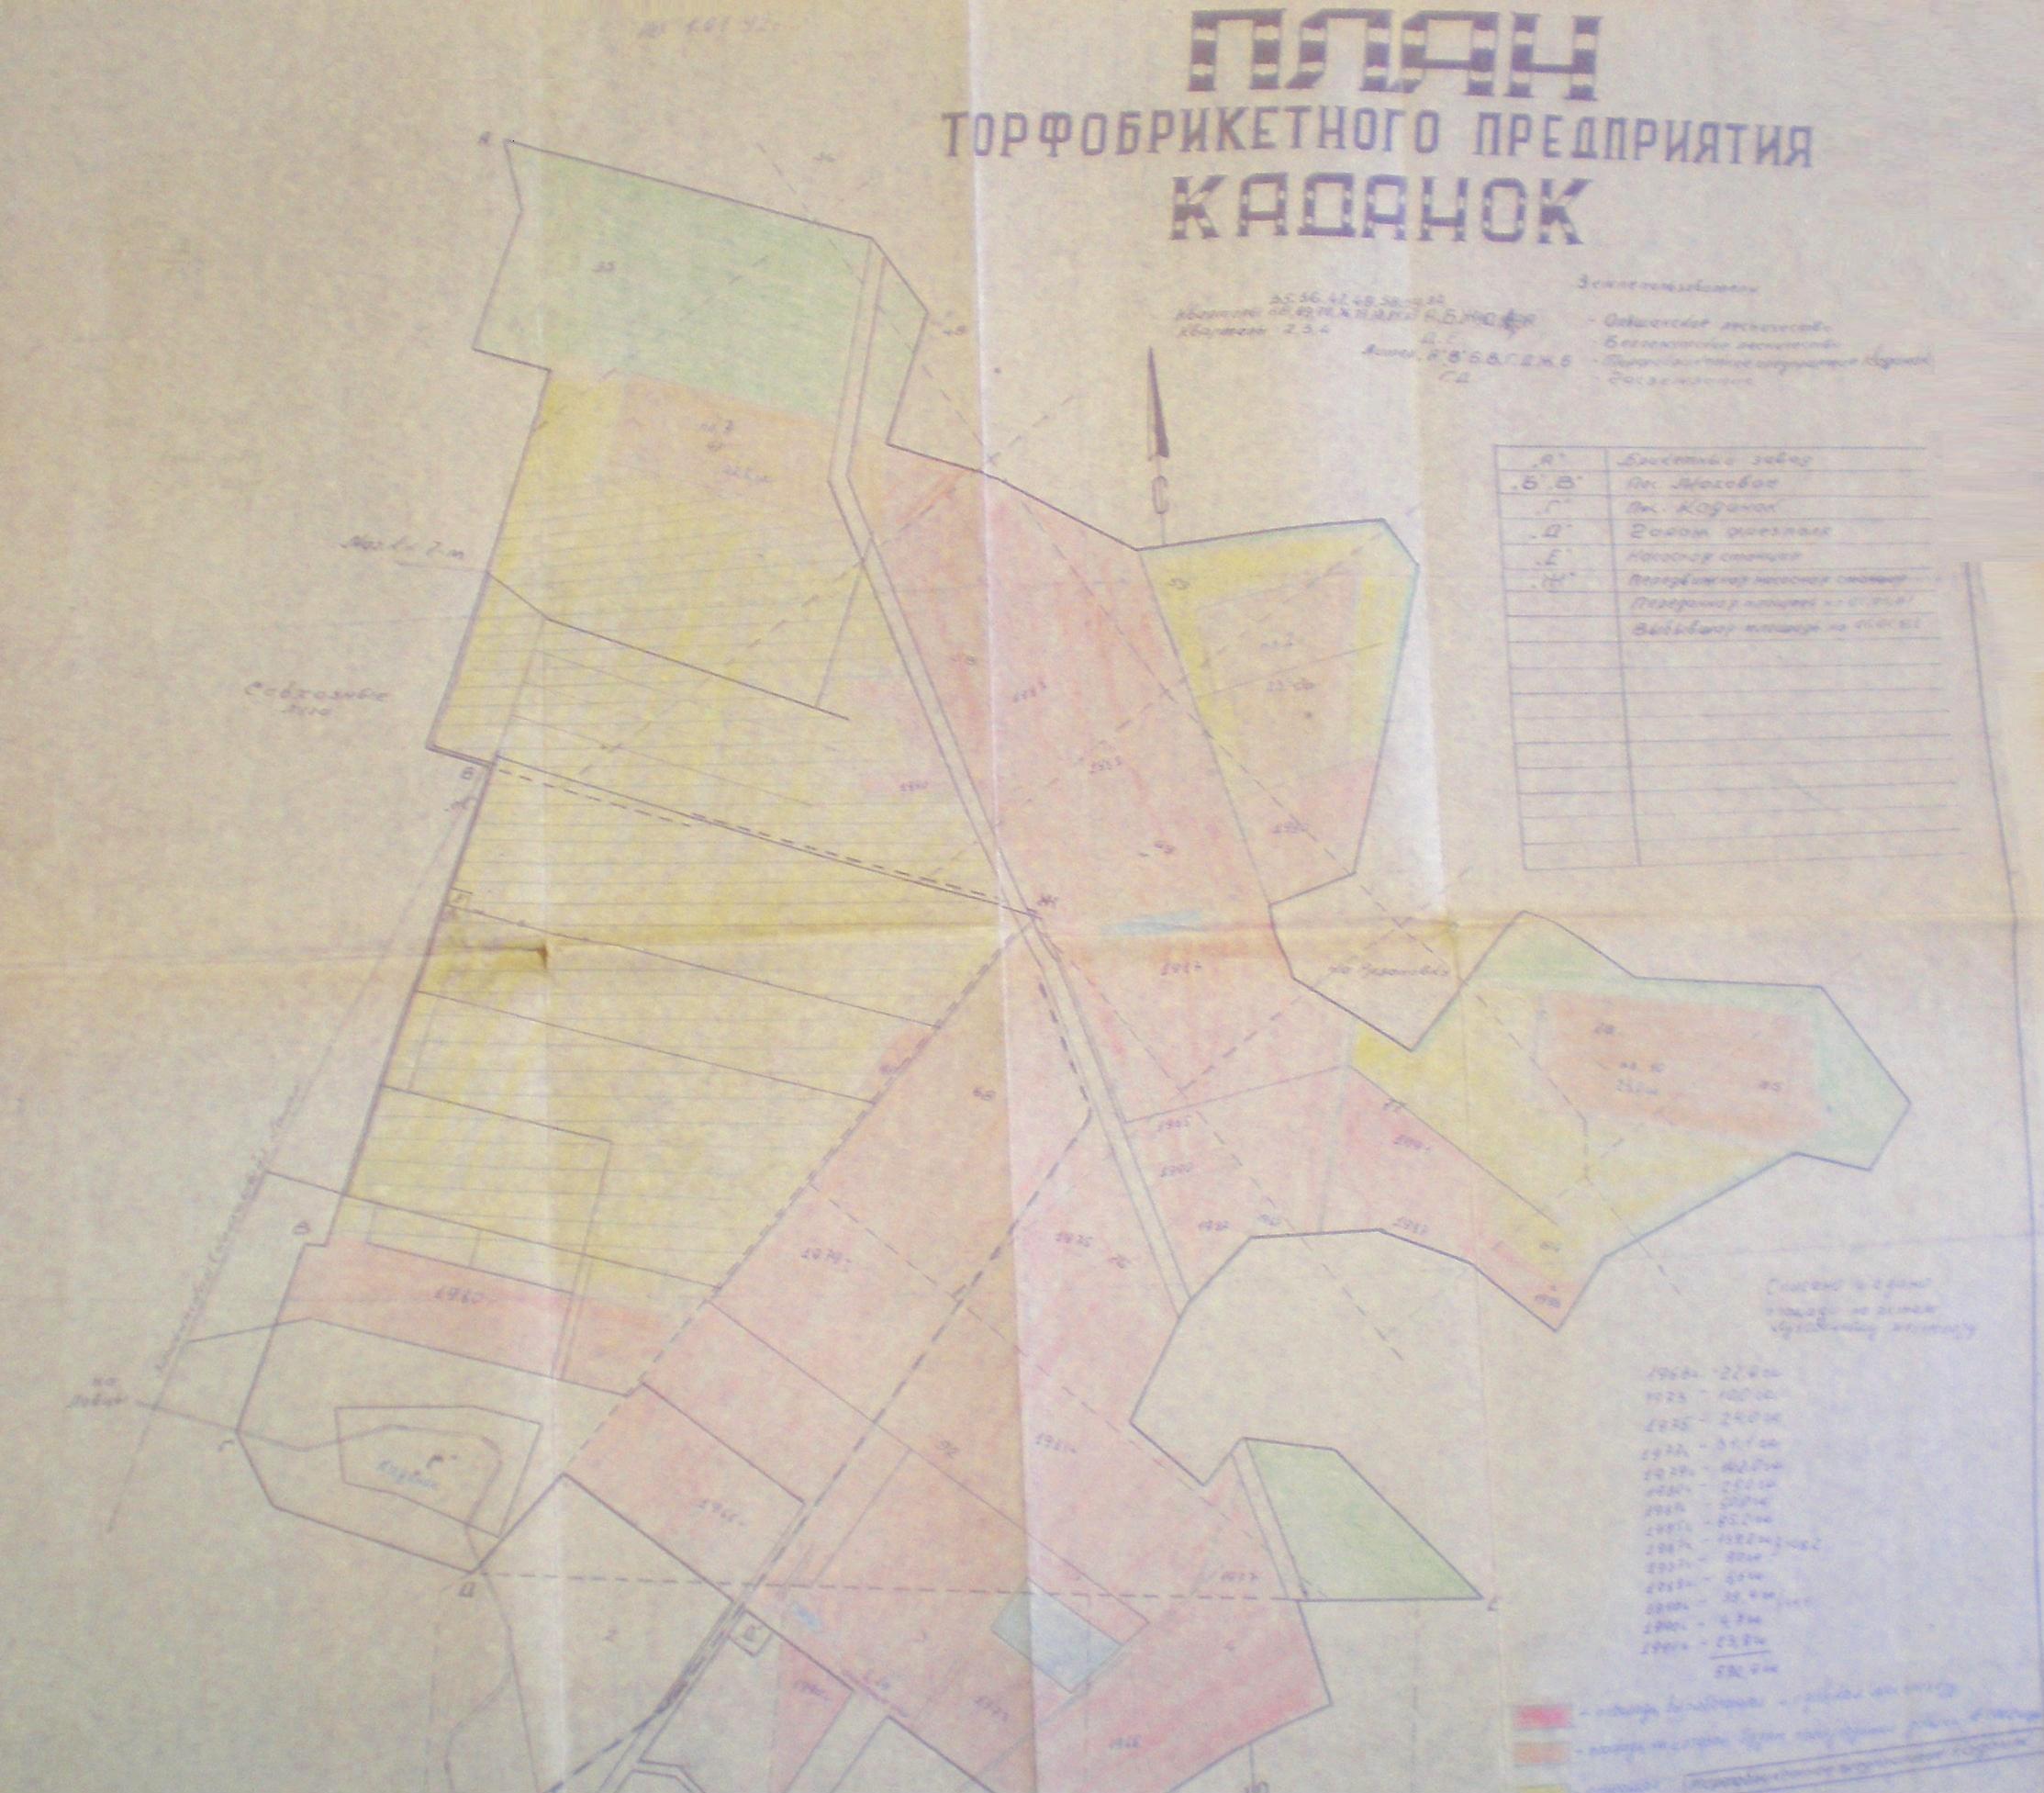 Узкоколейная железная дорога торфопредприятия «Каданок» - схемы и топографические карты